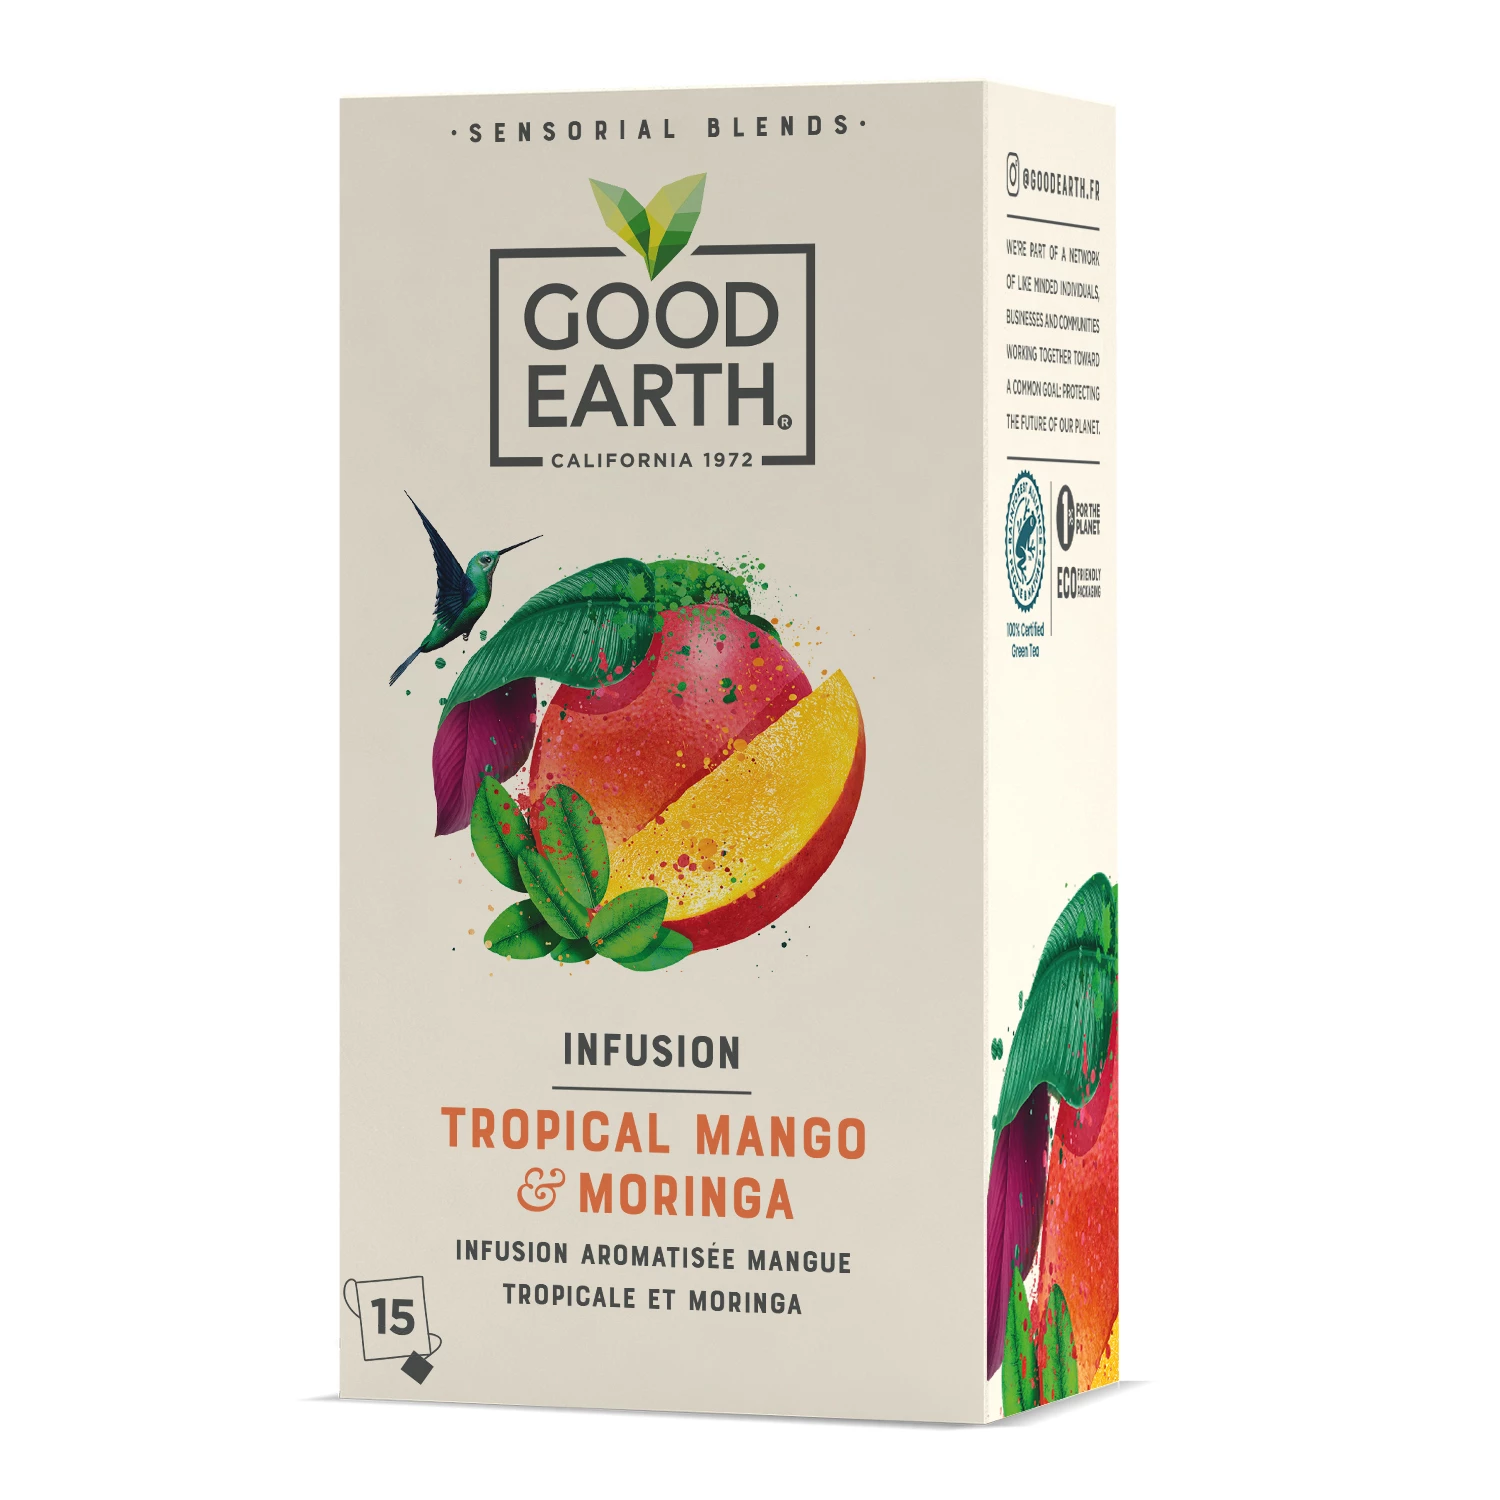 Infusie met tropische mango-smaak, 15s, 42g - GOEDE AARDE